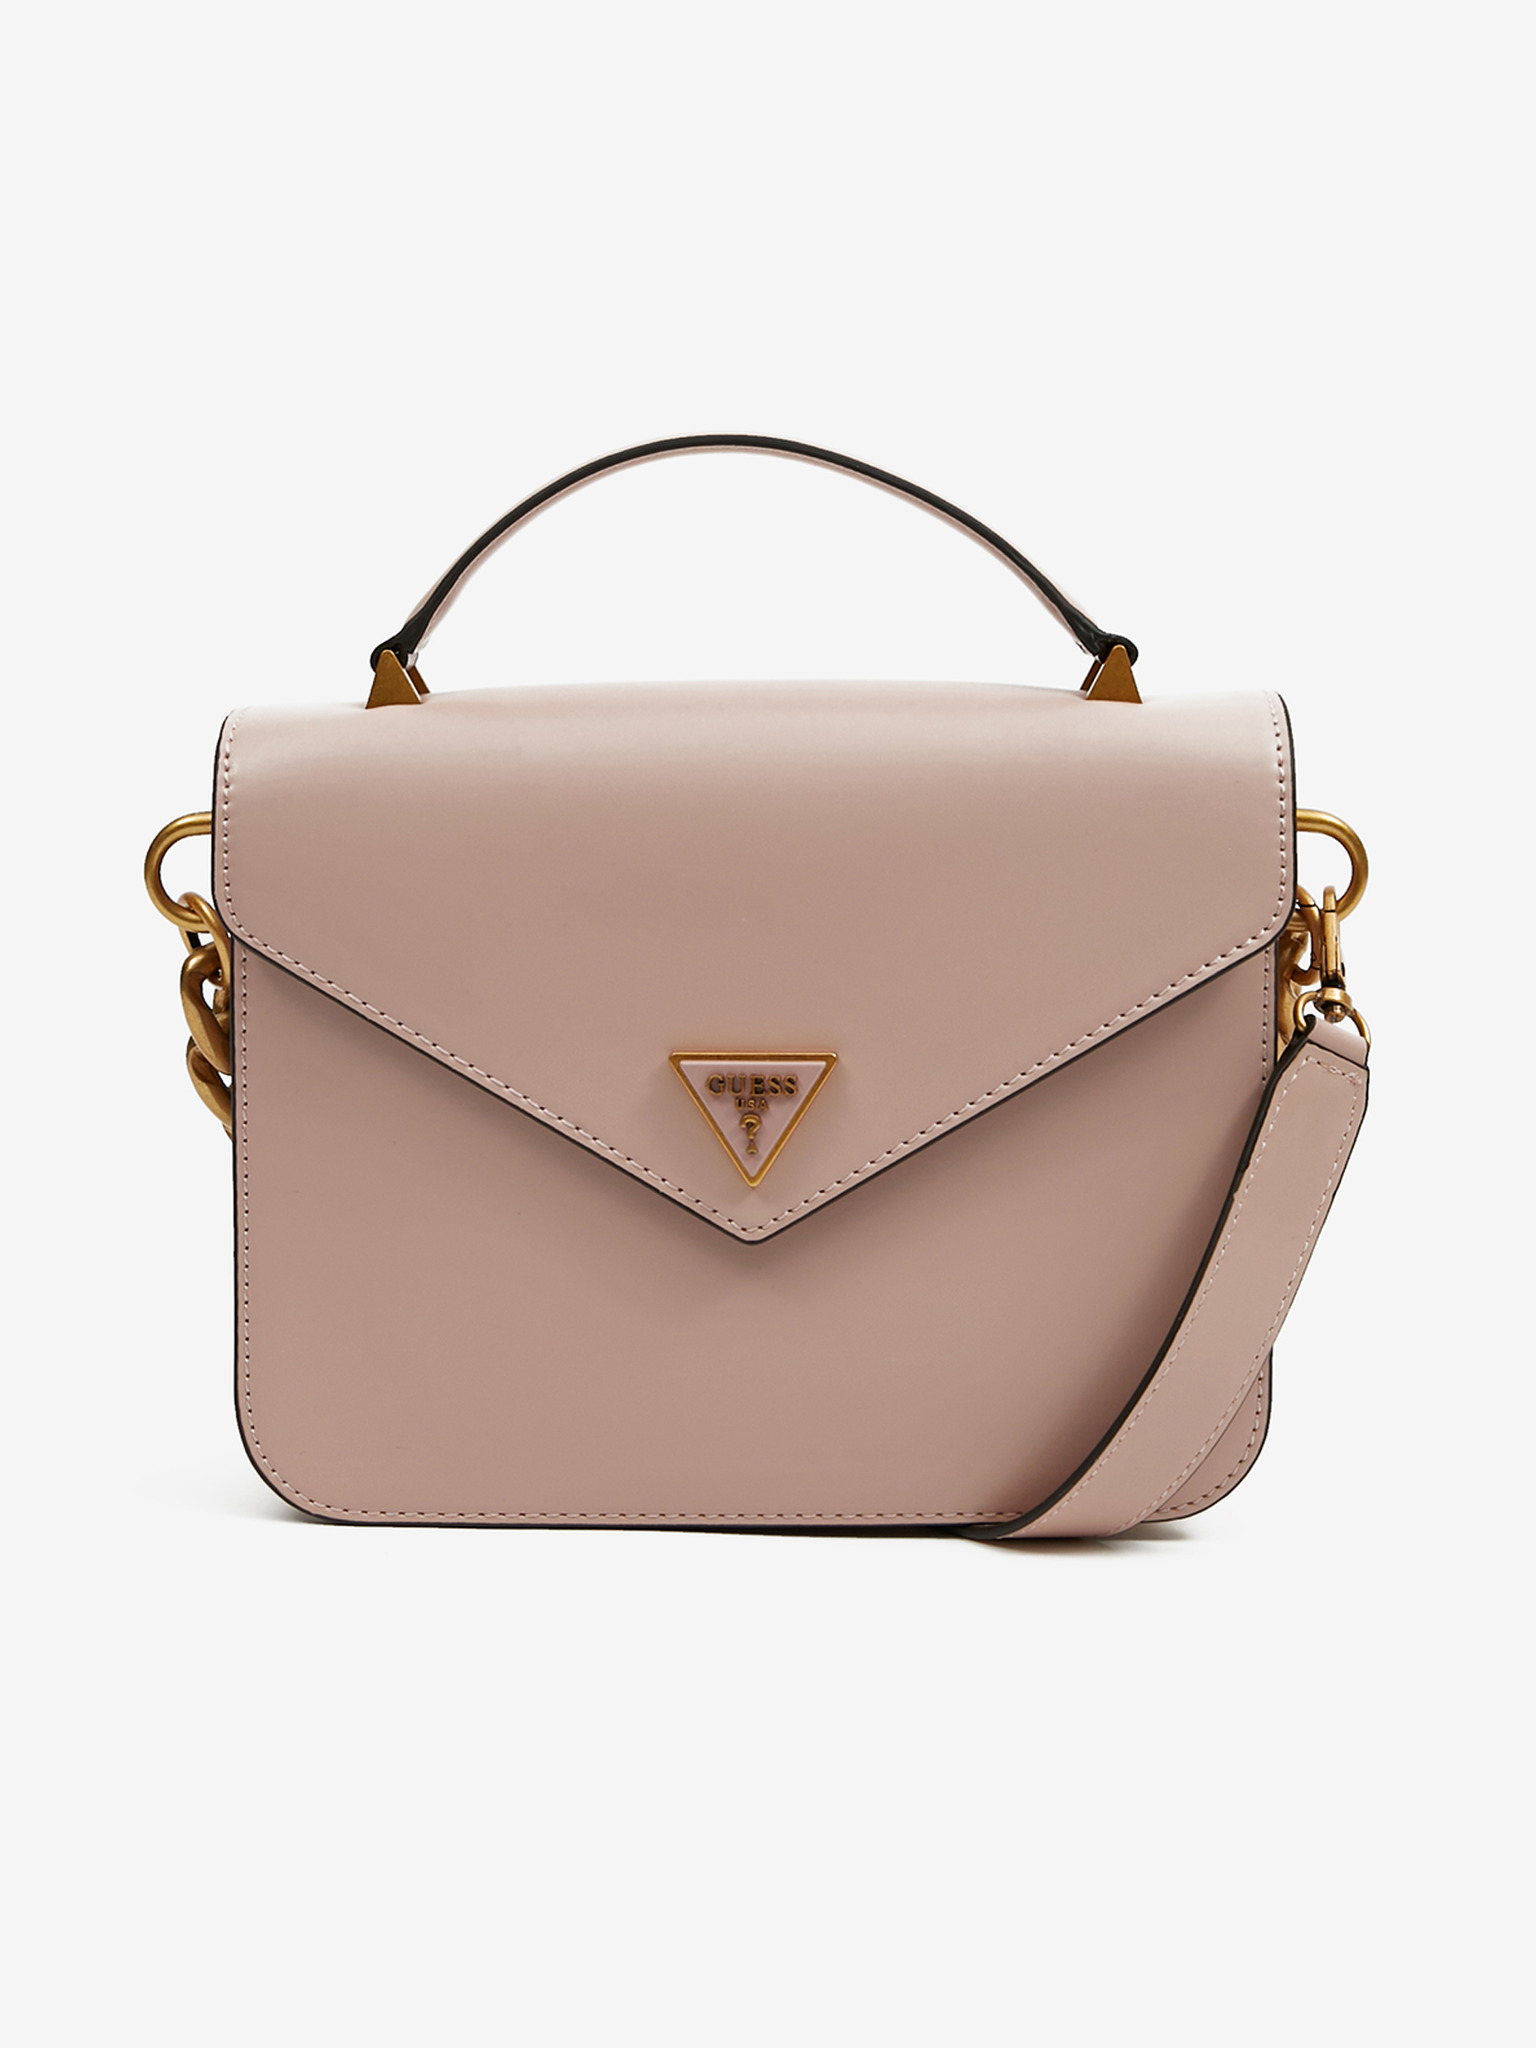 Guess - Retour Top Handle Flap Handbag